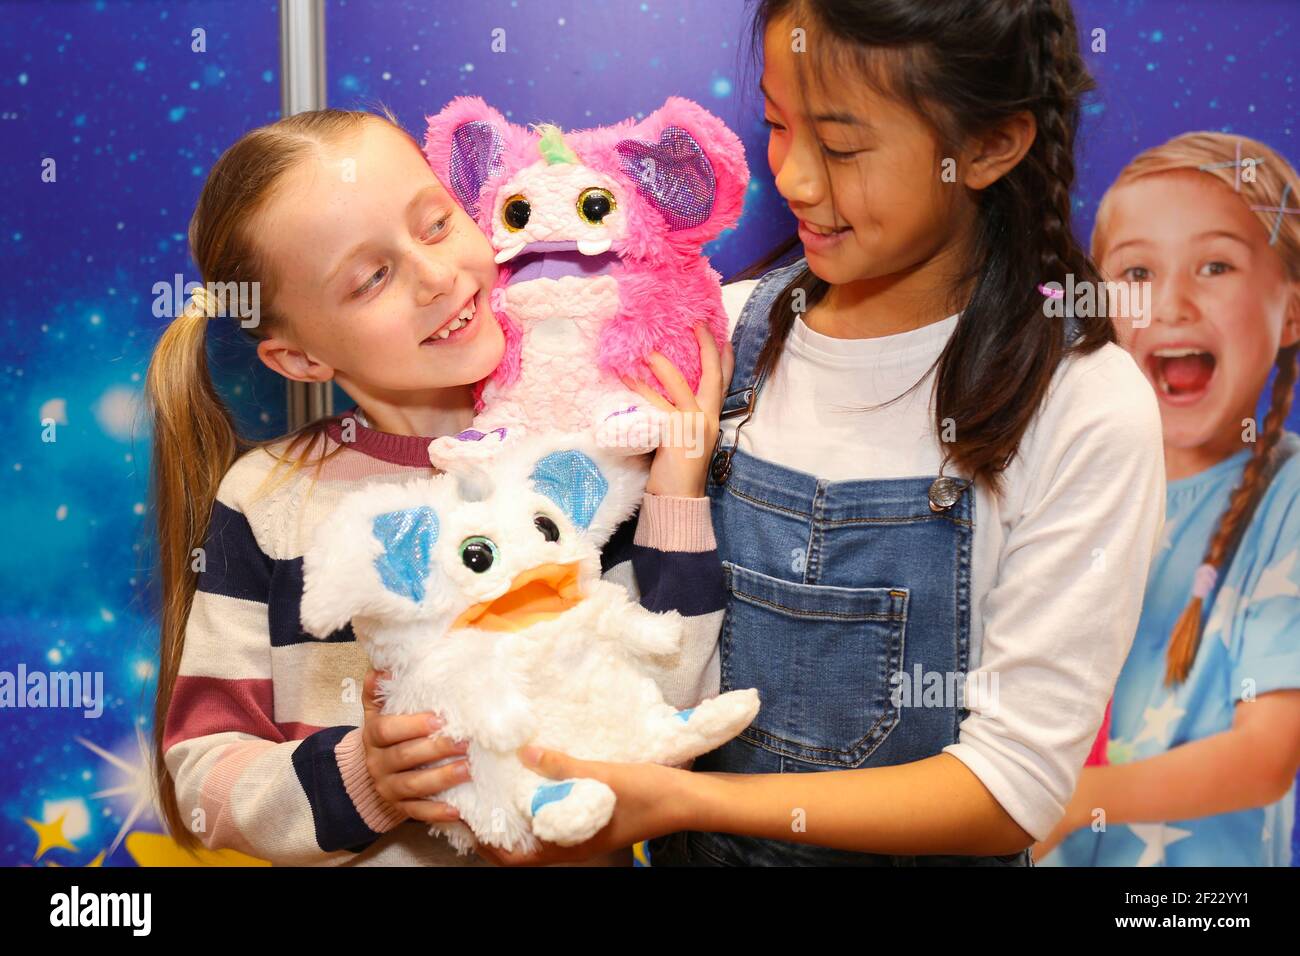 Gwen (izquierda), de 8 años, y Fiona, de 10 años, juegan con juguetes  Rizmo, uno de los 12 mejores juguetes esta Navidad, presentado en Dreamtoys 2019  en Londres. La lista, publicada por